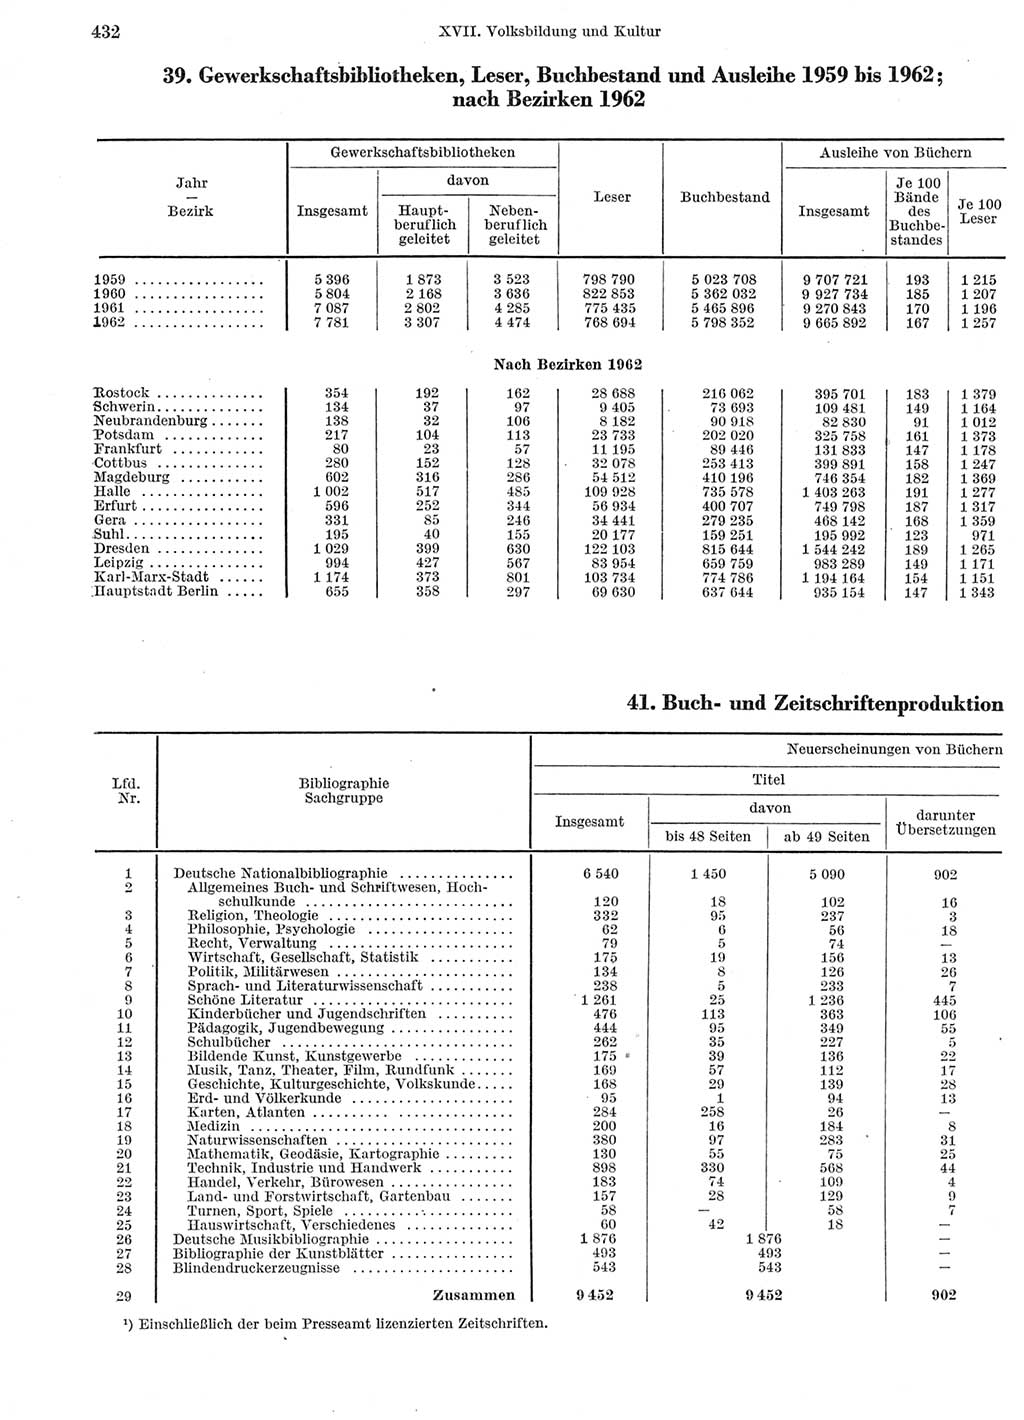 Statistisches Jahrbuch der Deutschen Demokratischen Republik (DDR) 1963, Seite 432 (Stat. Jb. DDR 1963, S. 432)